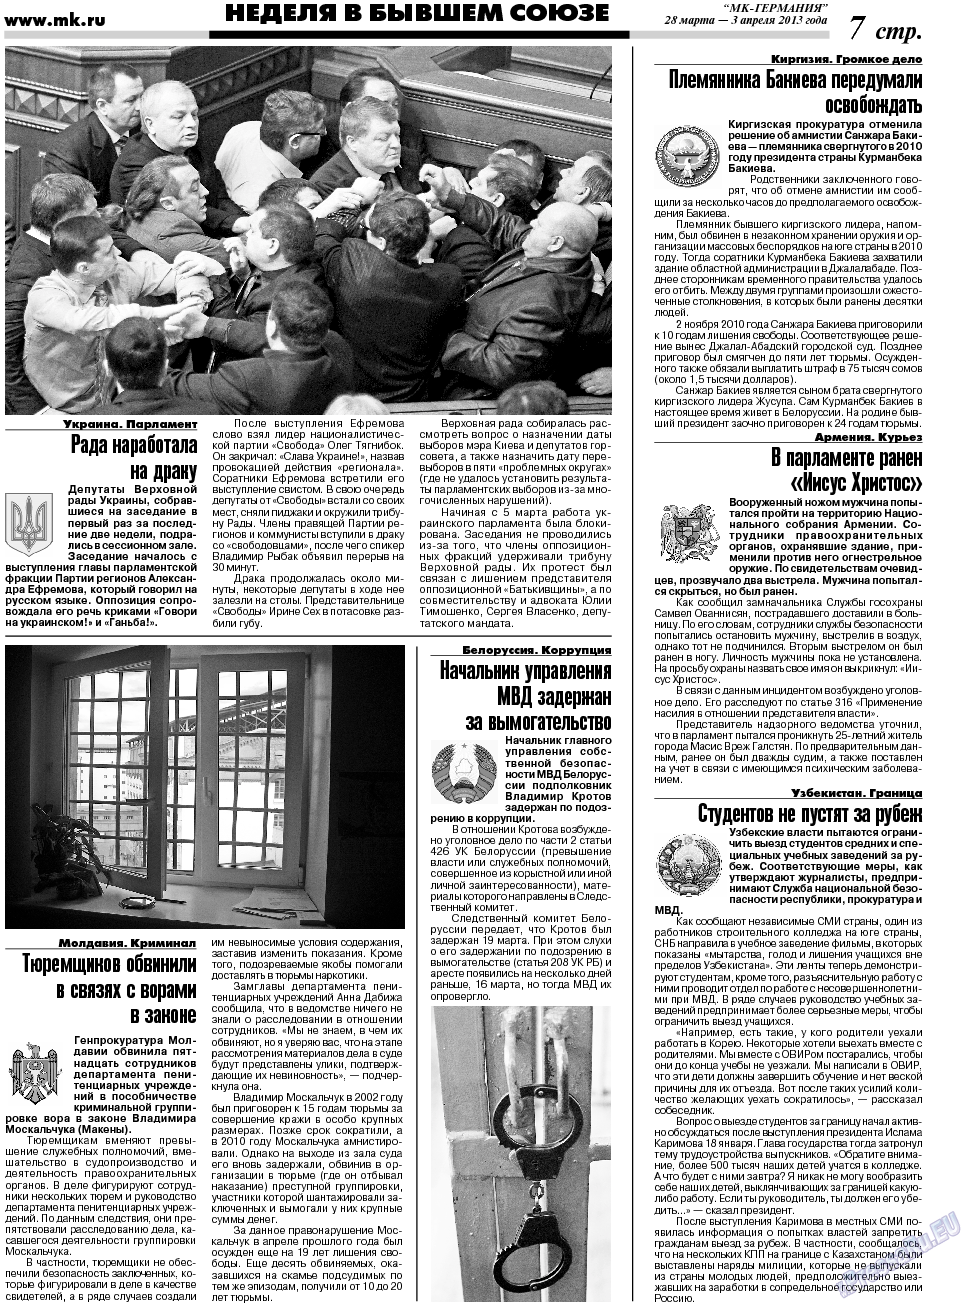 МК-Германия (газета). 2013 год, номер 13, стр. 7